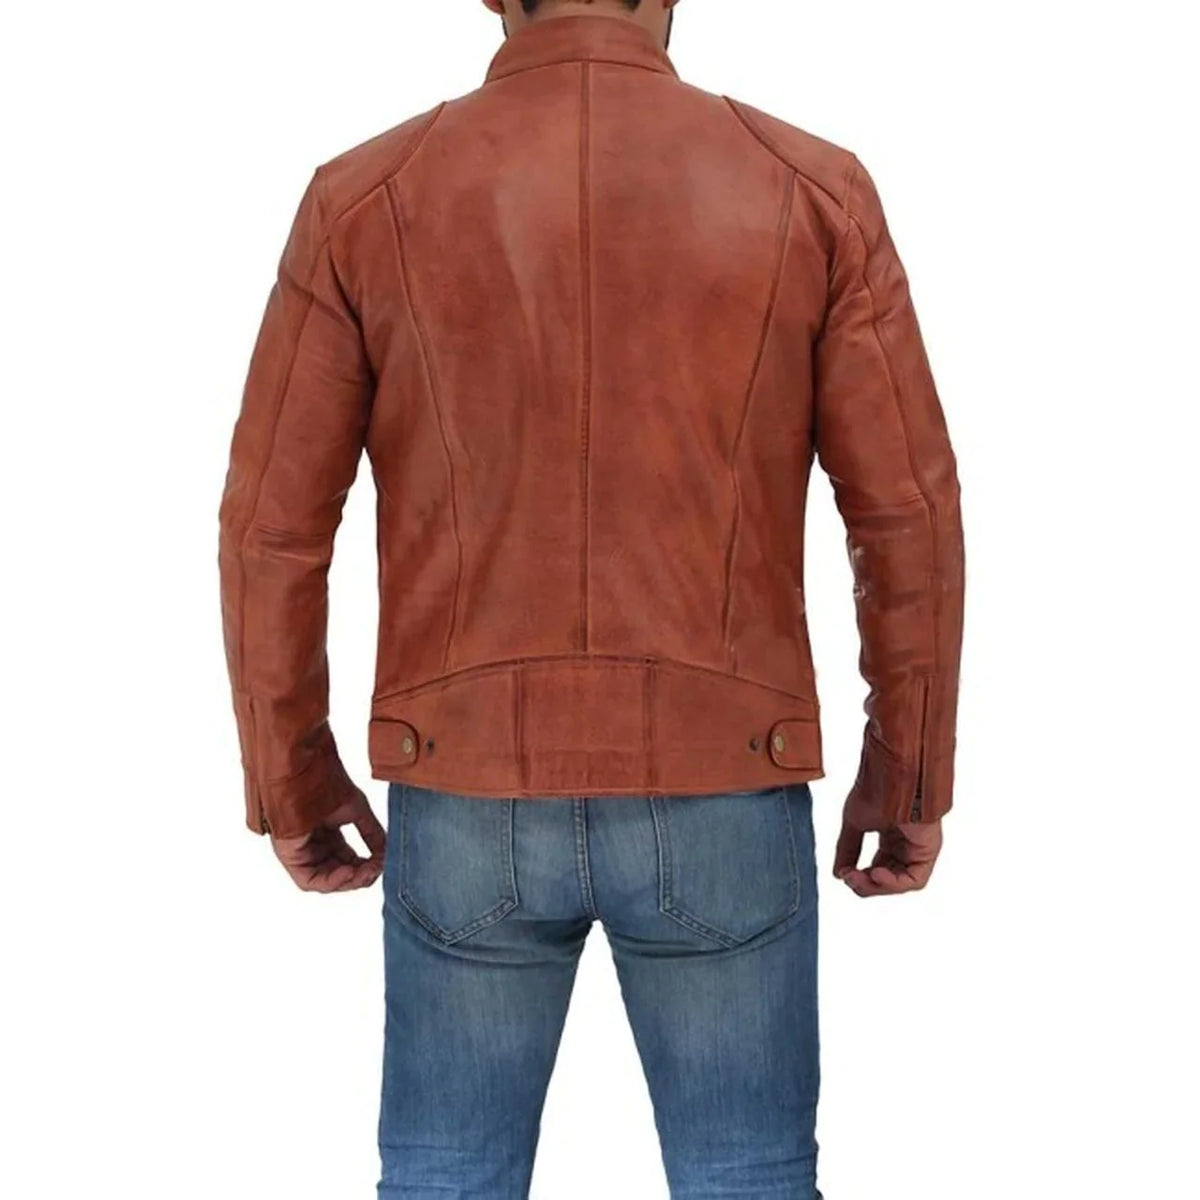 Men's Cafe Racer Tan Leather Jacket